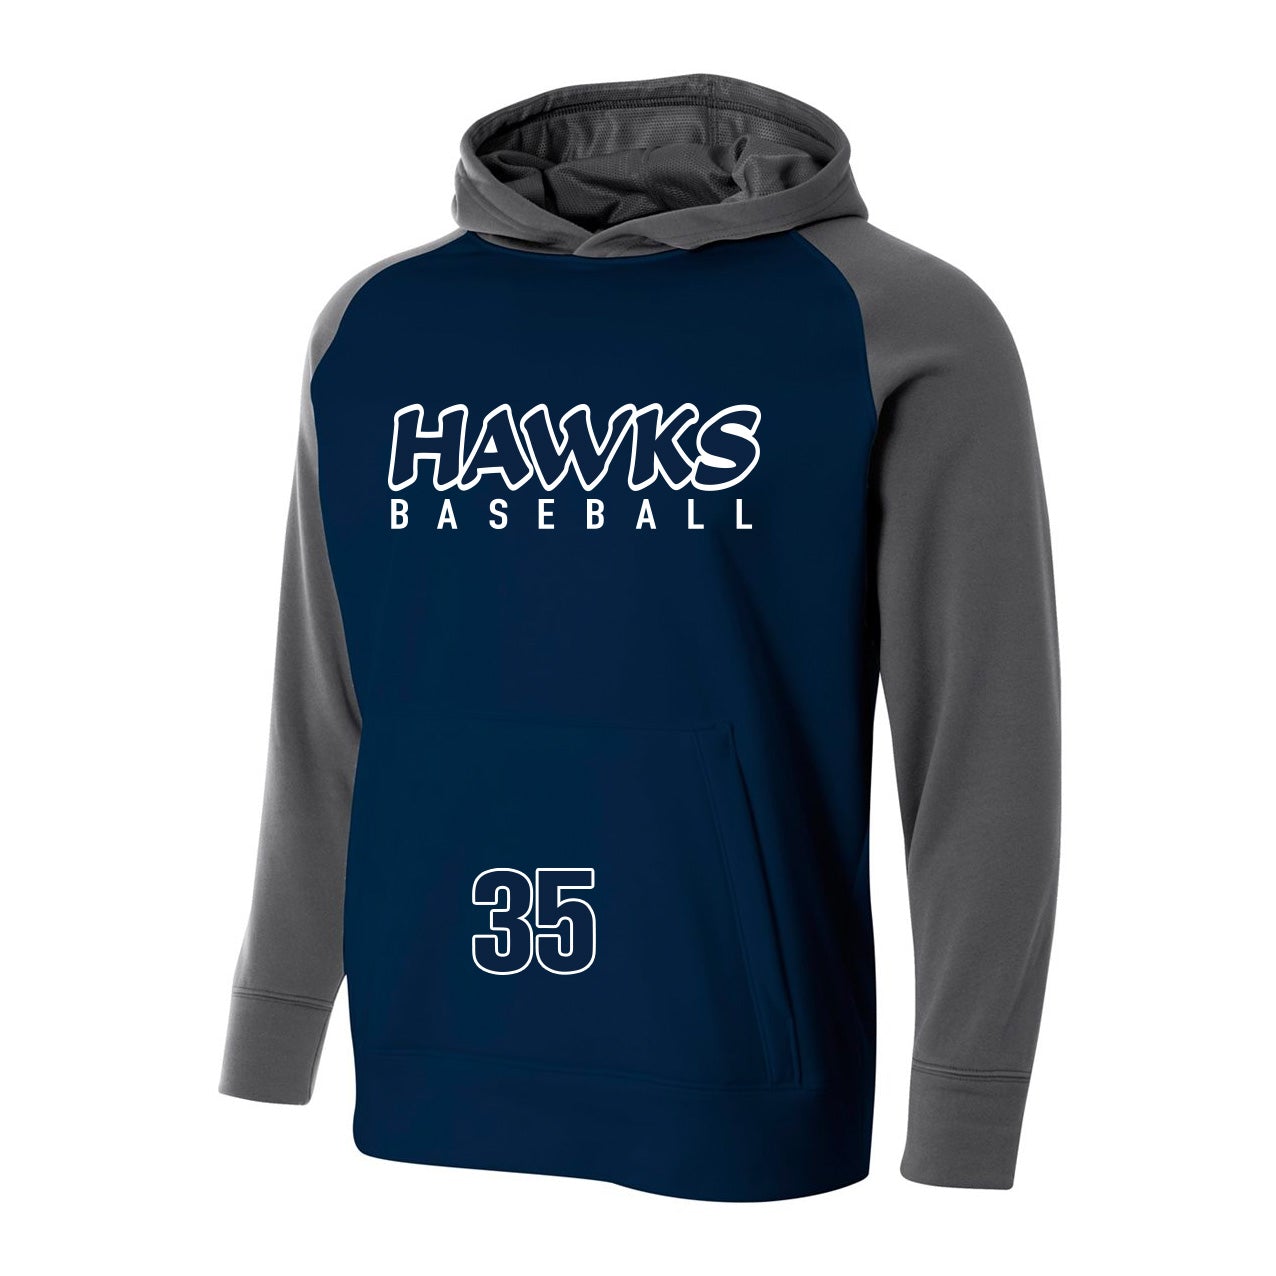 Hawks Baseball Player's Tech Fleece Hoody